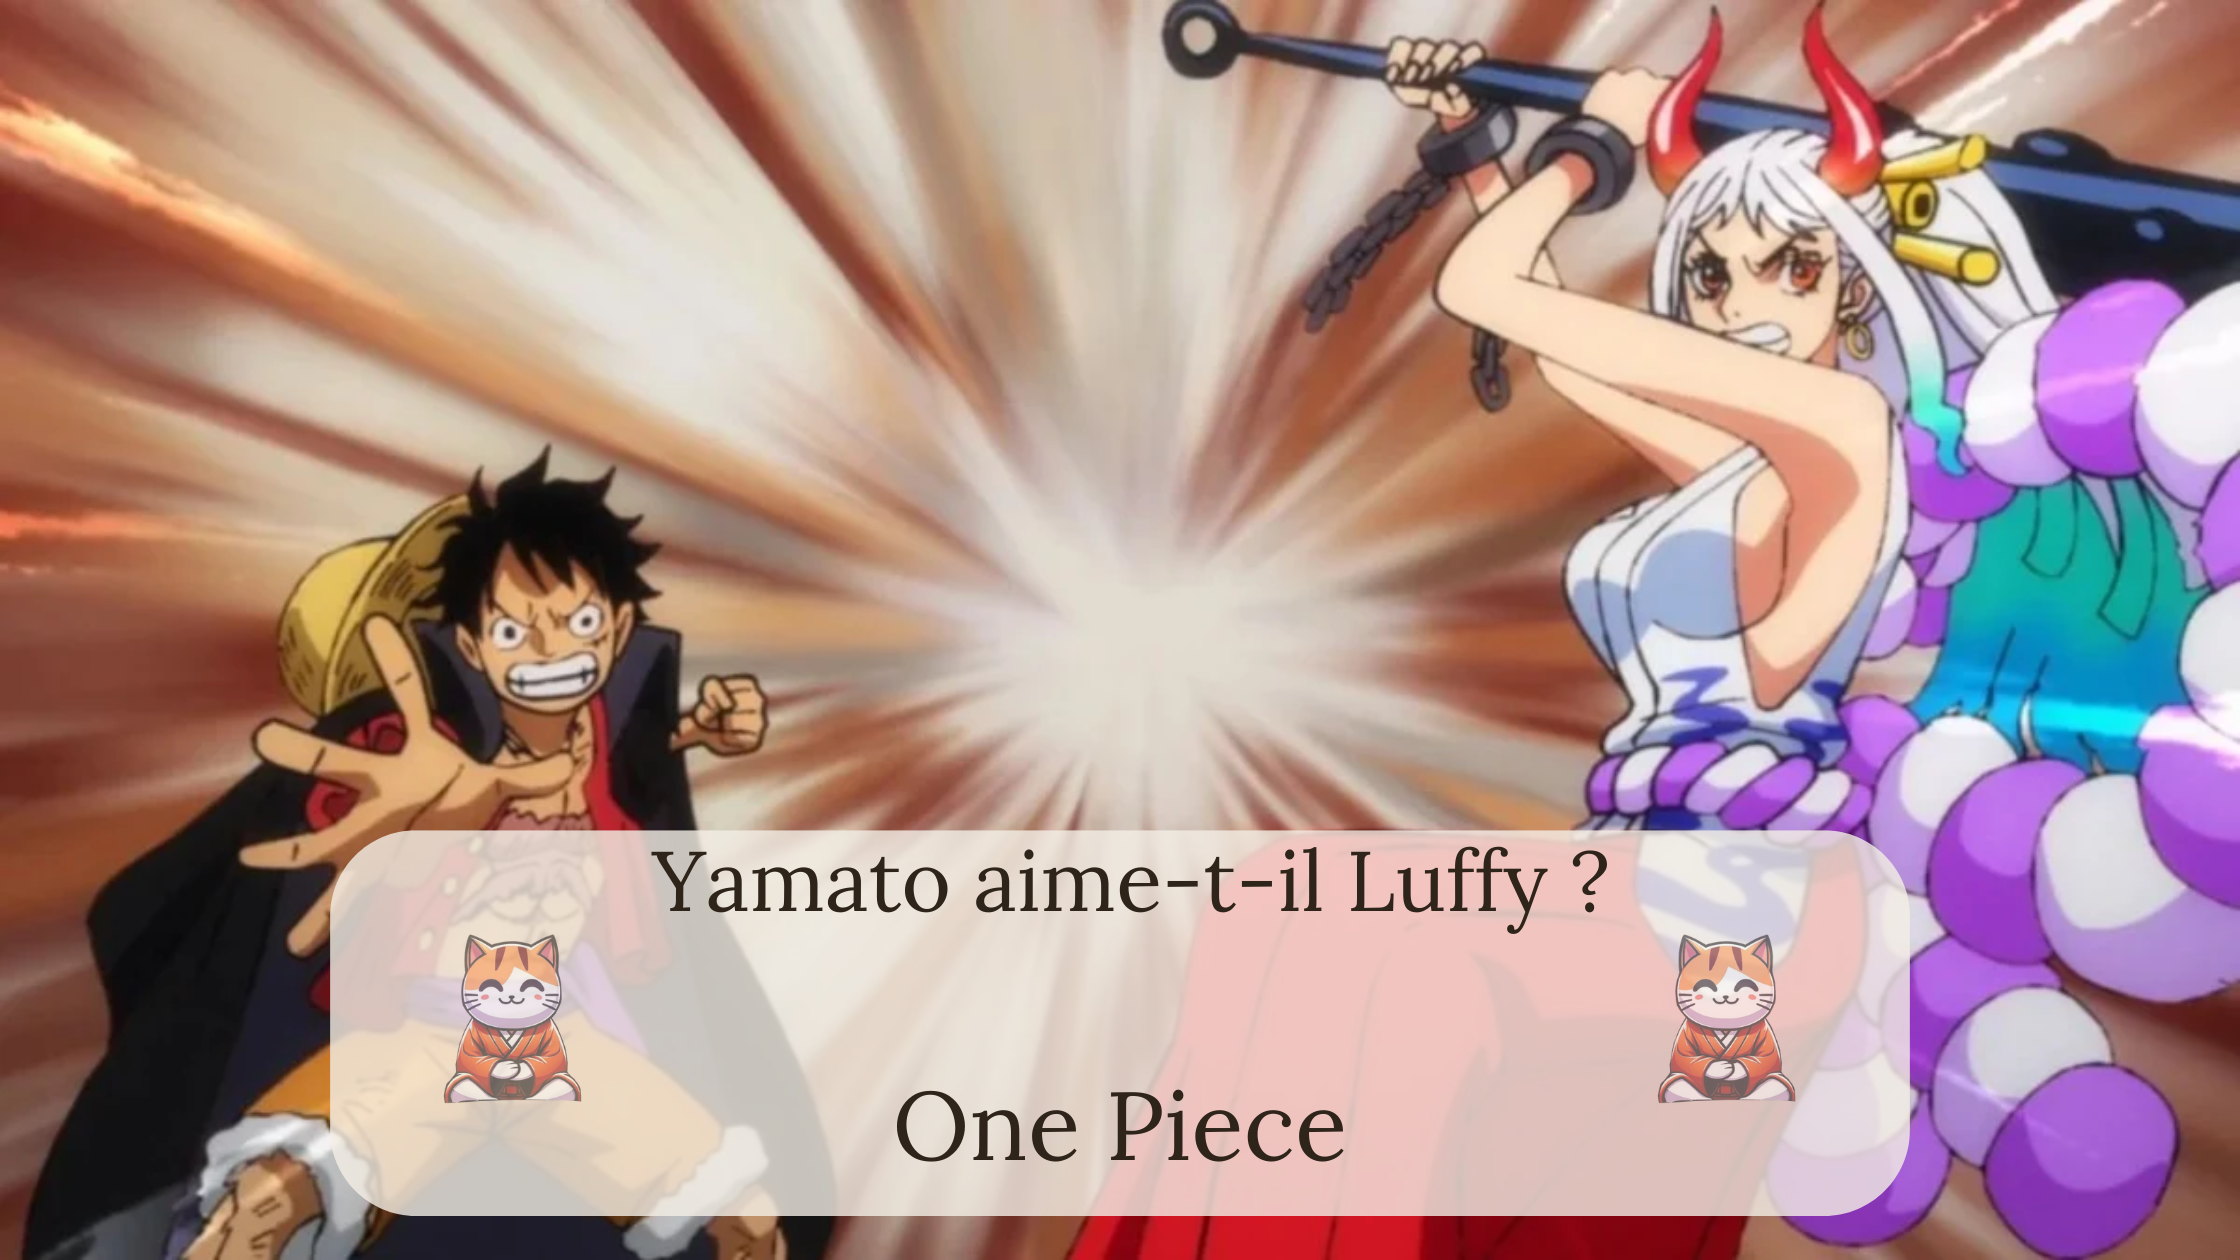 One Piece : Yamato aime-t-il Luffy ?